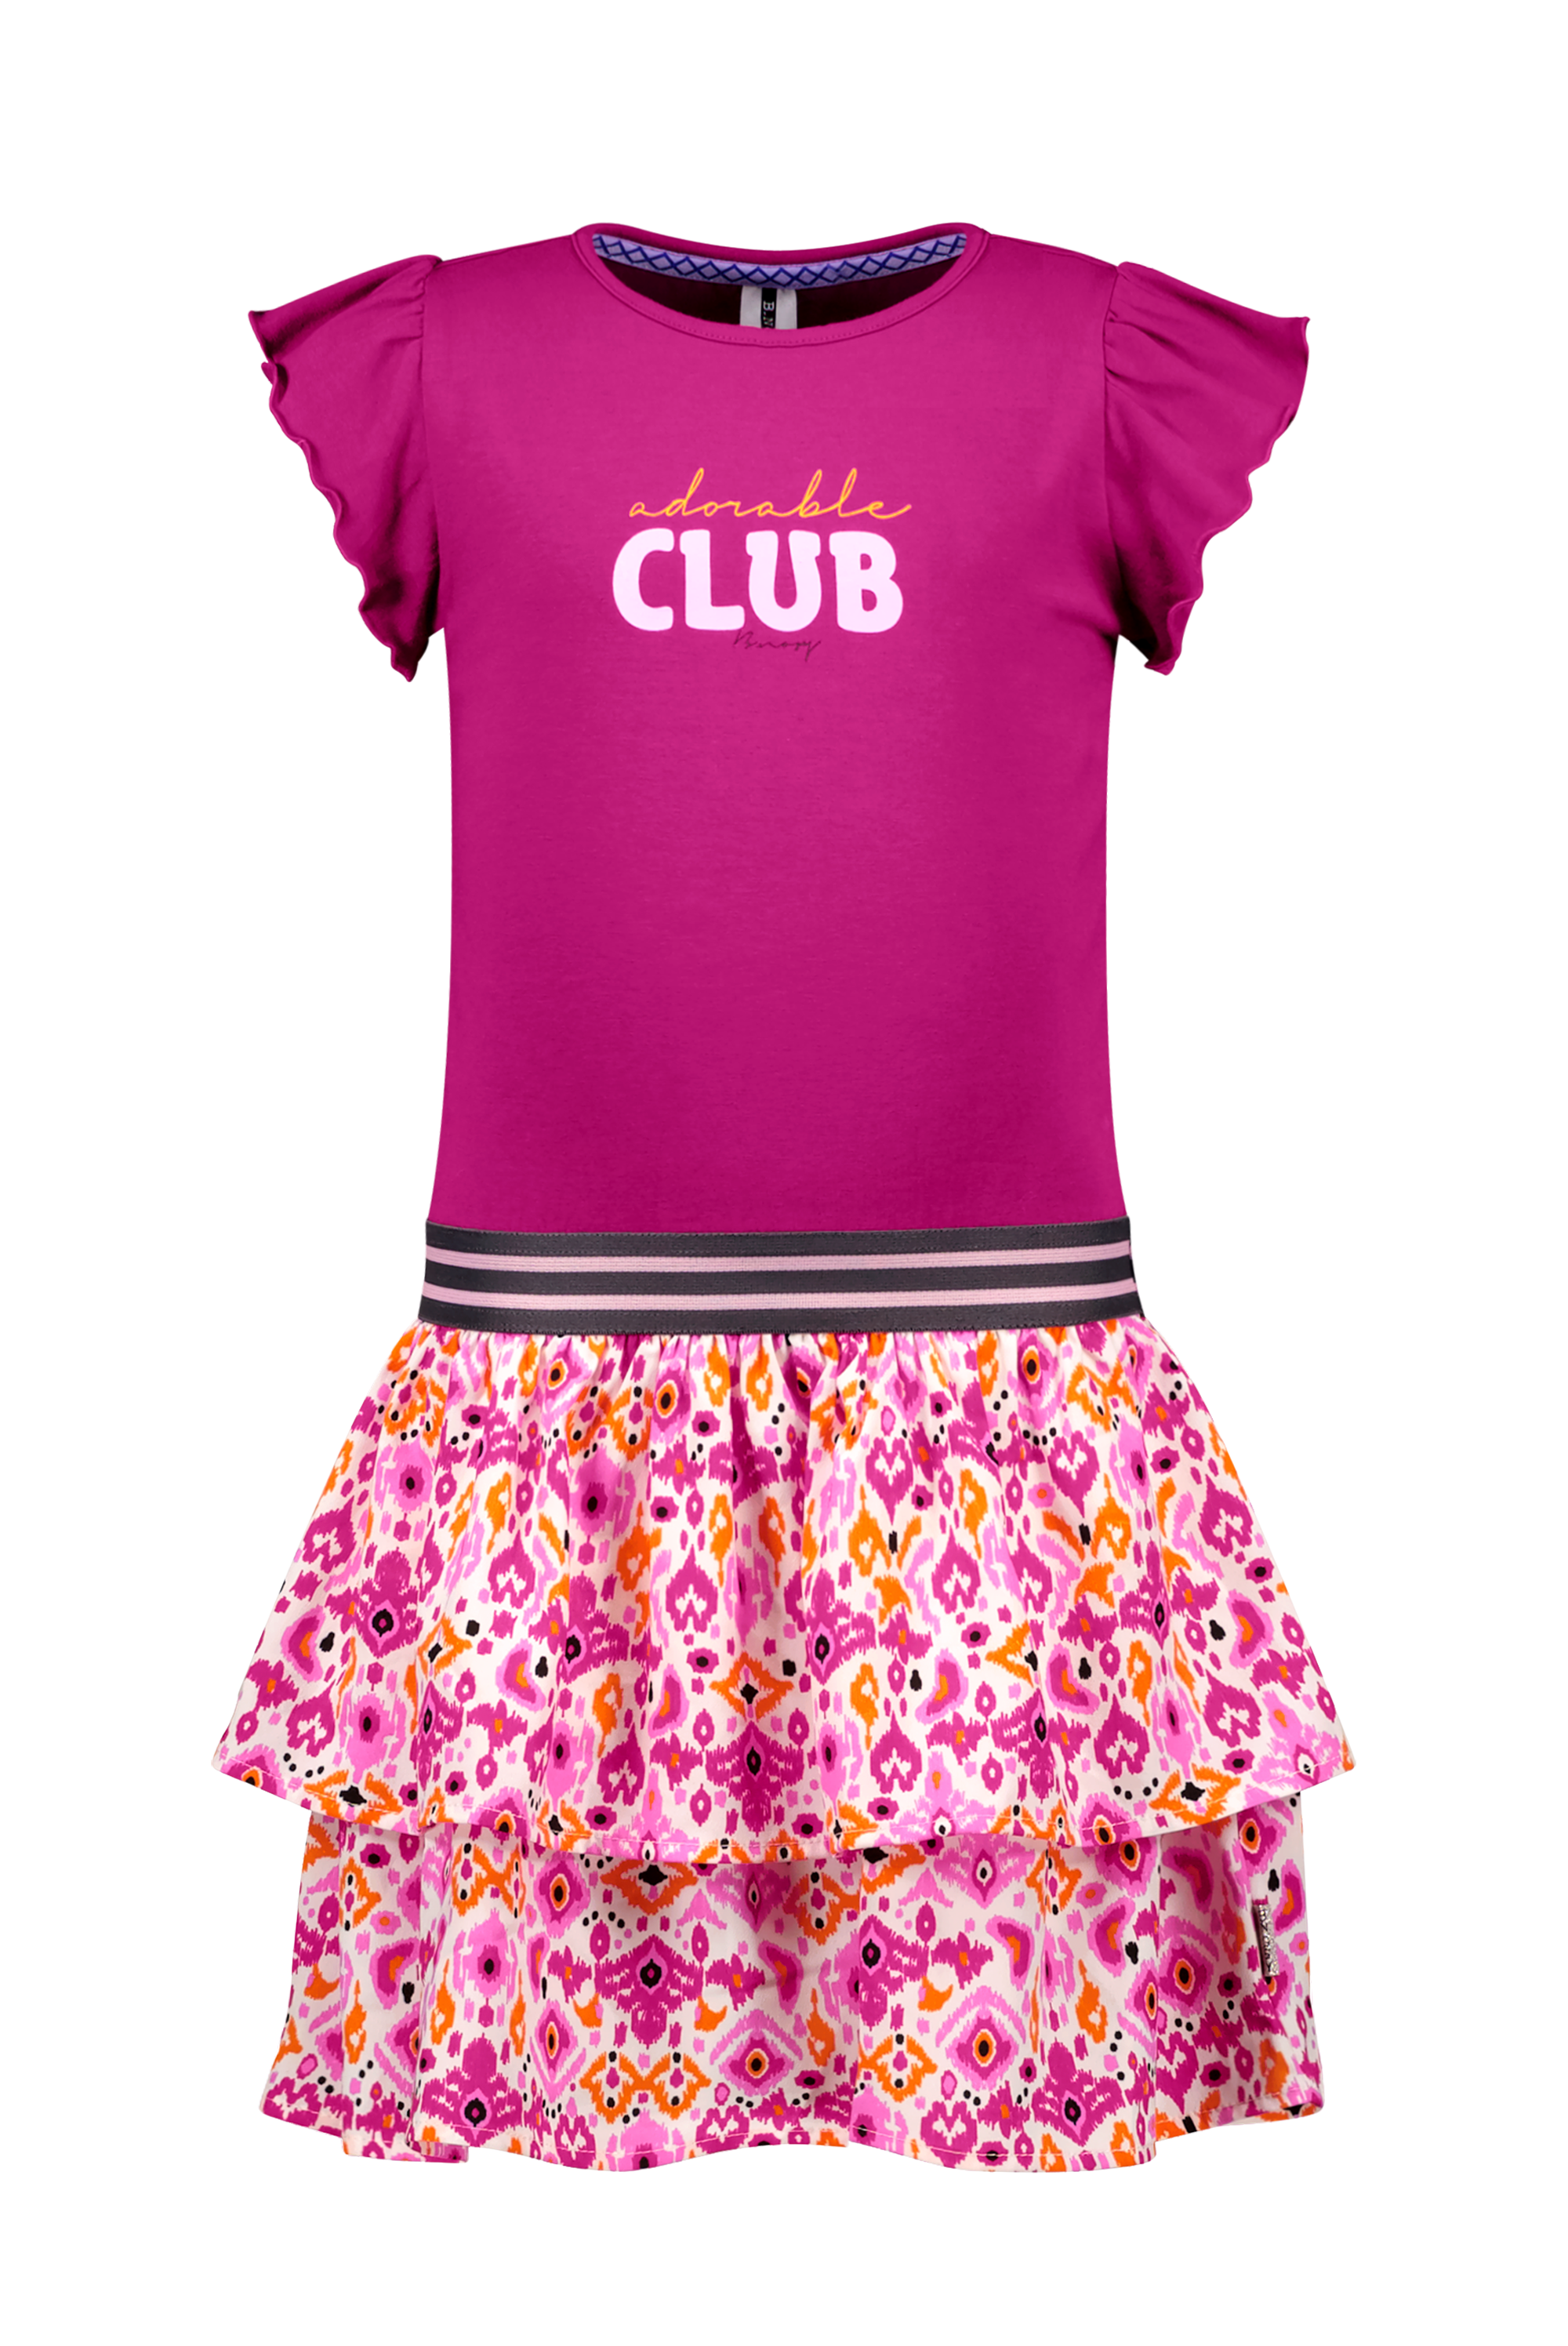 Rok Girls dress w/ jersey top and 2 layer skirt part